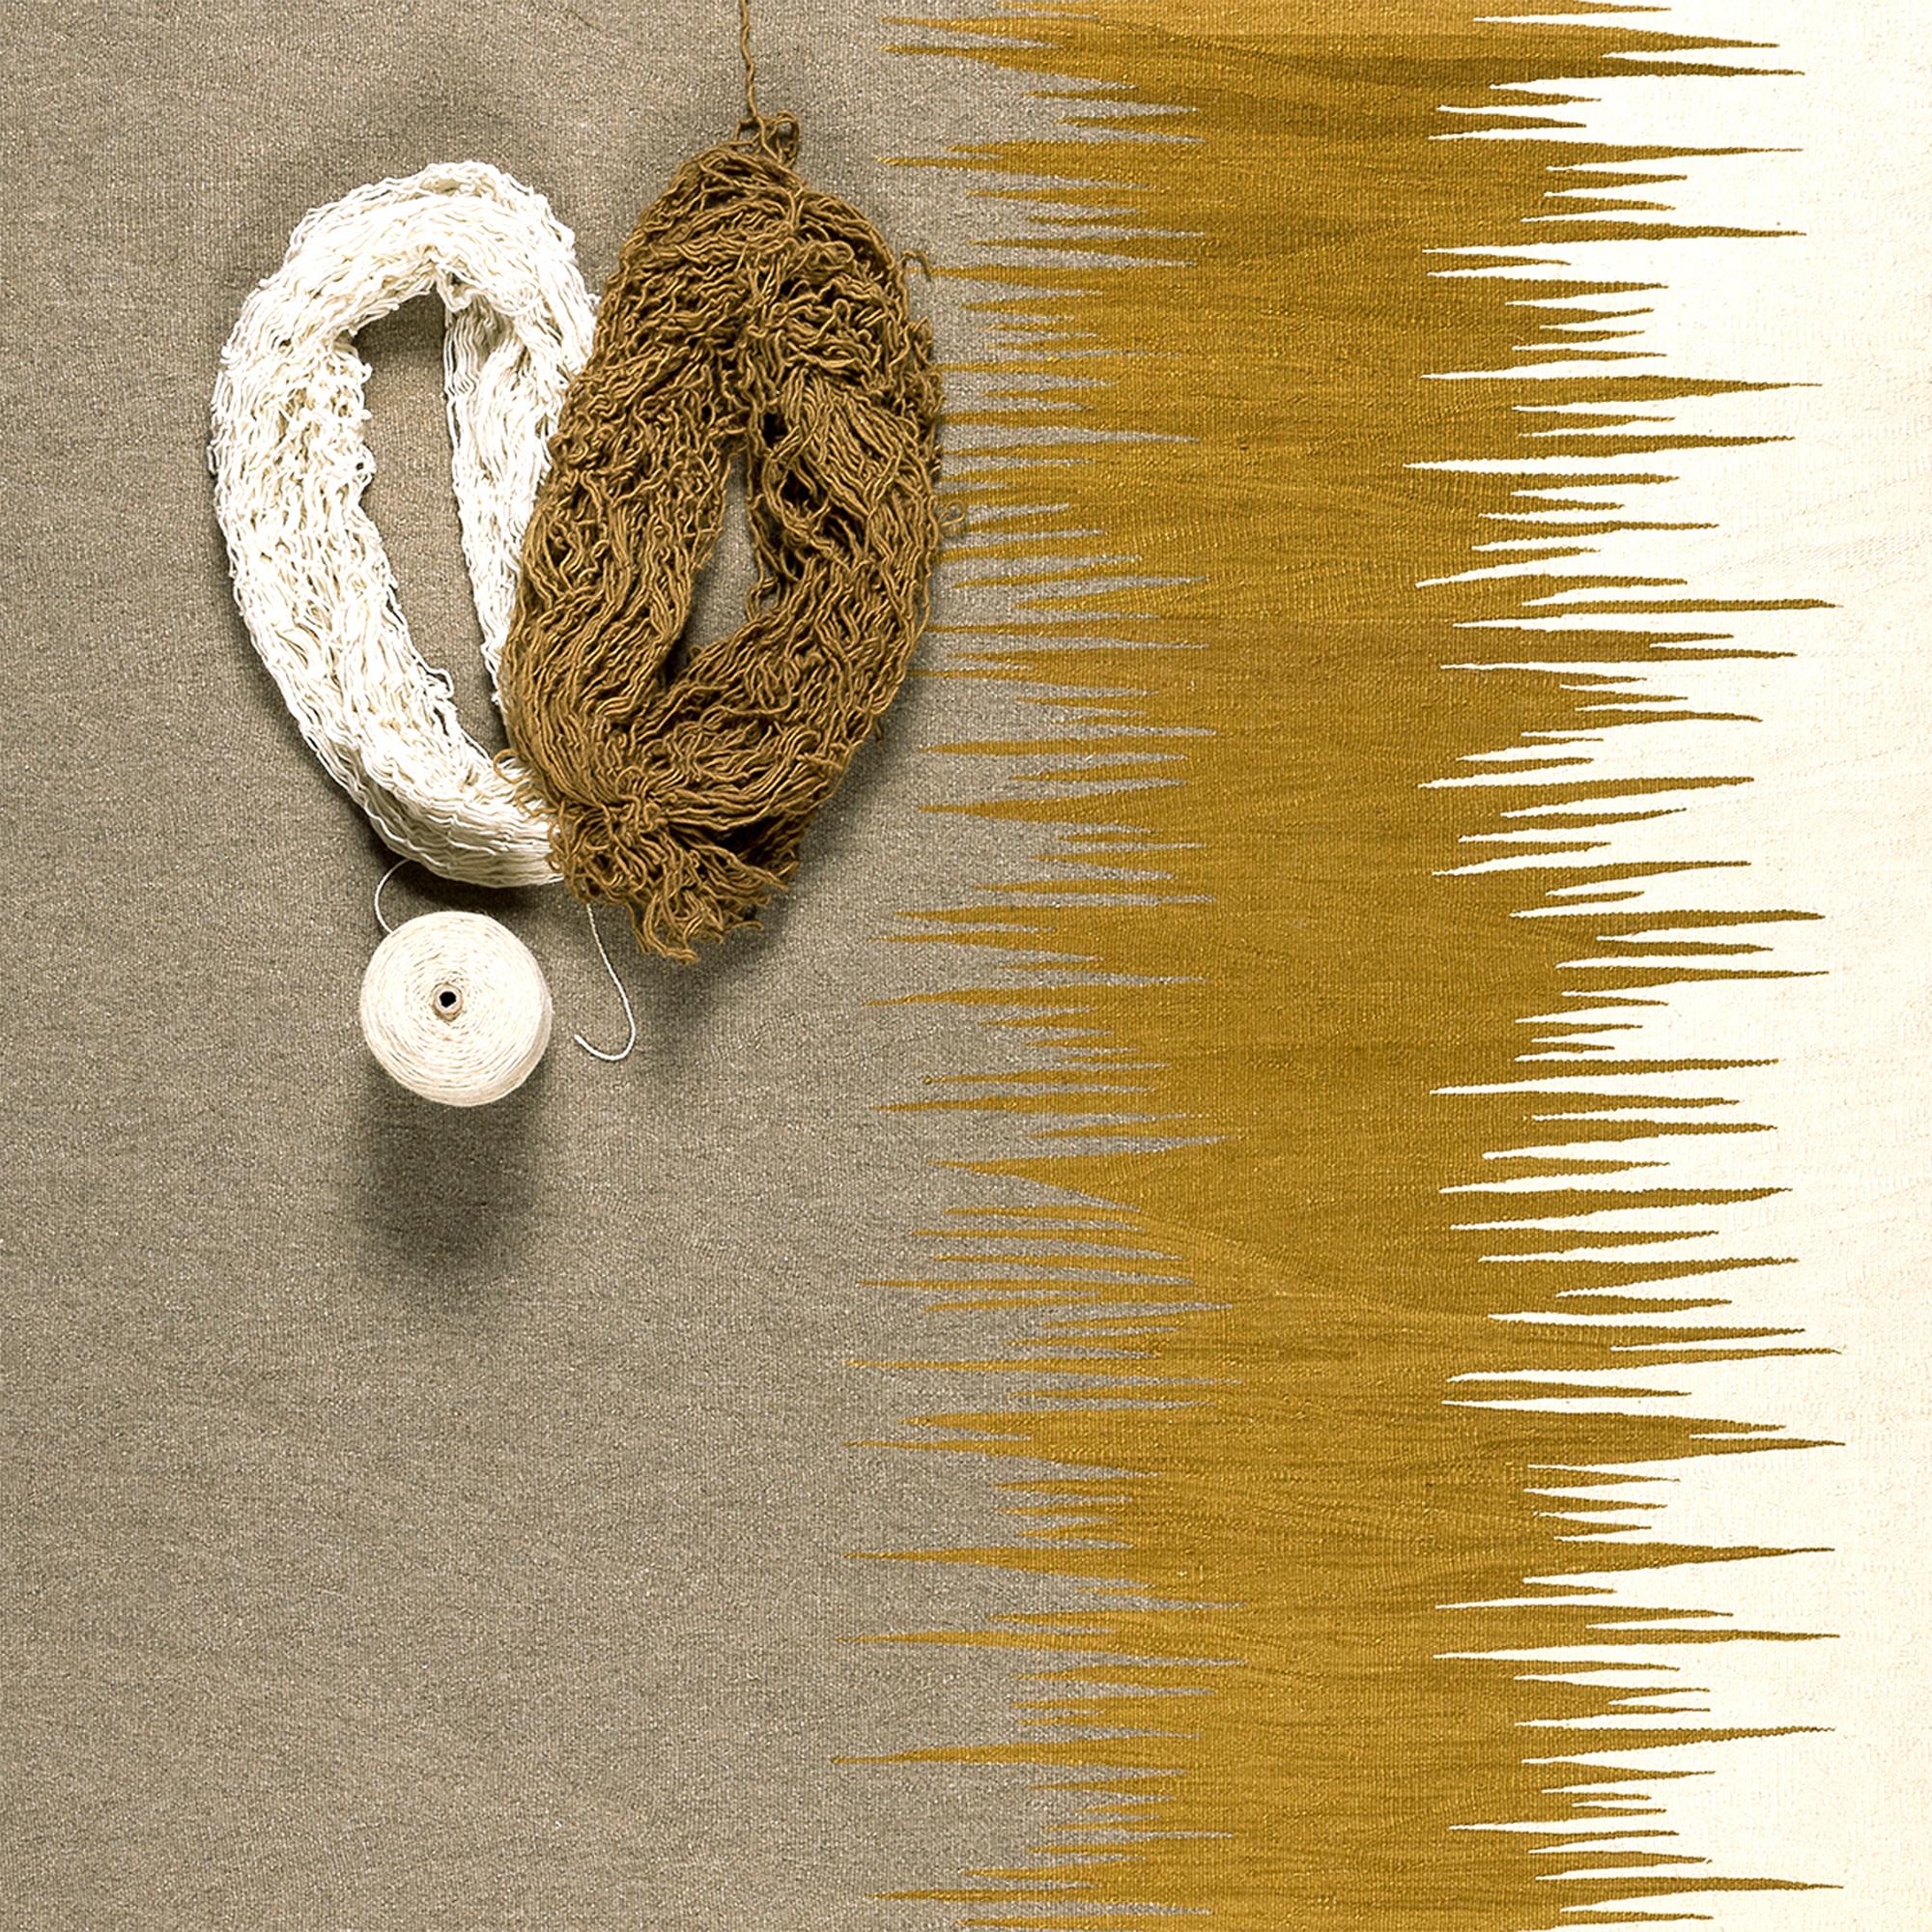 Le tapis kilim Yakamoz No 3 fait partie d'une série de kilims qui s'inspirent de la poésie des reflets lumineux à la surface de la mer. Les motifs abstraits, qui rappellent les transitions de couleurs alternées créées par la lumière réfléchie, sont